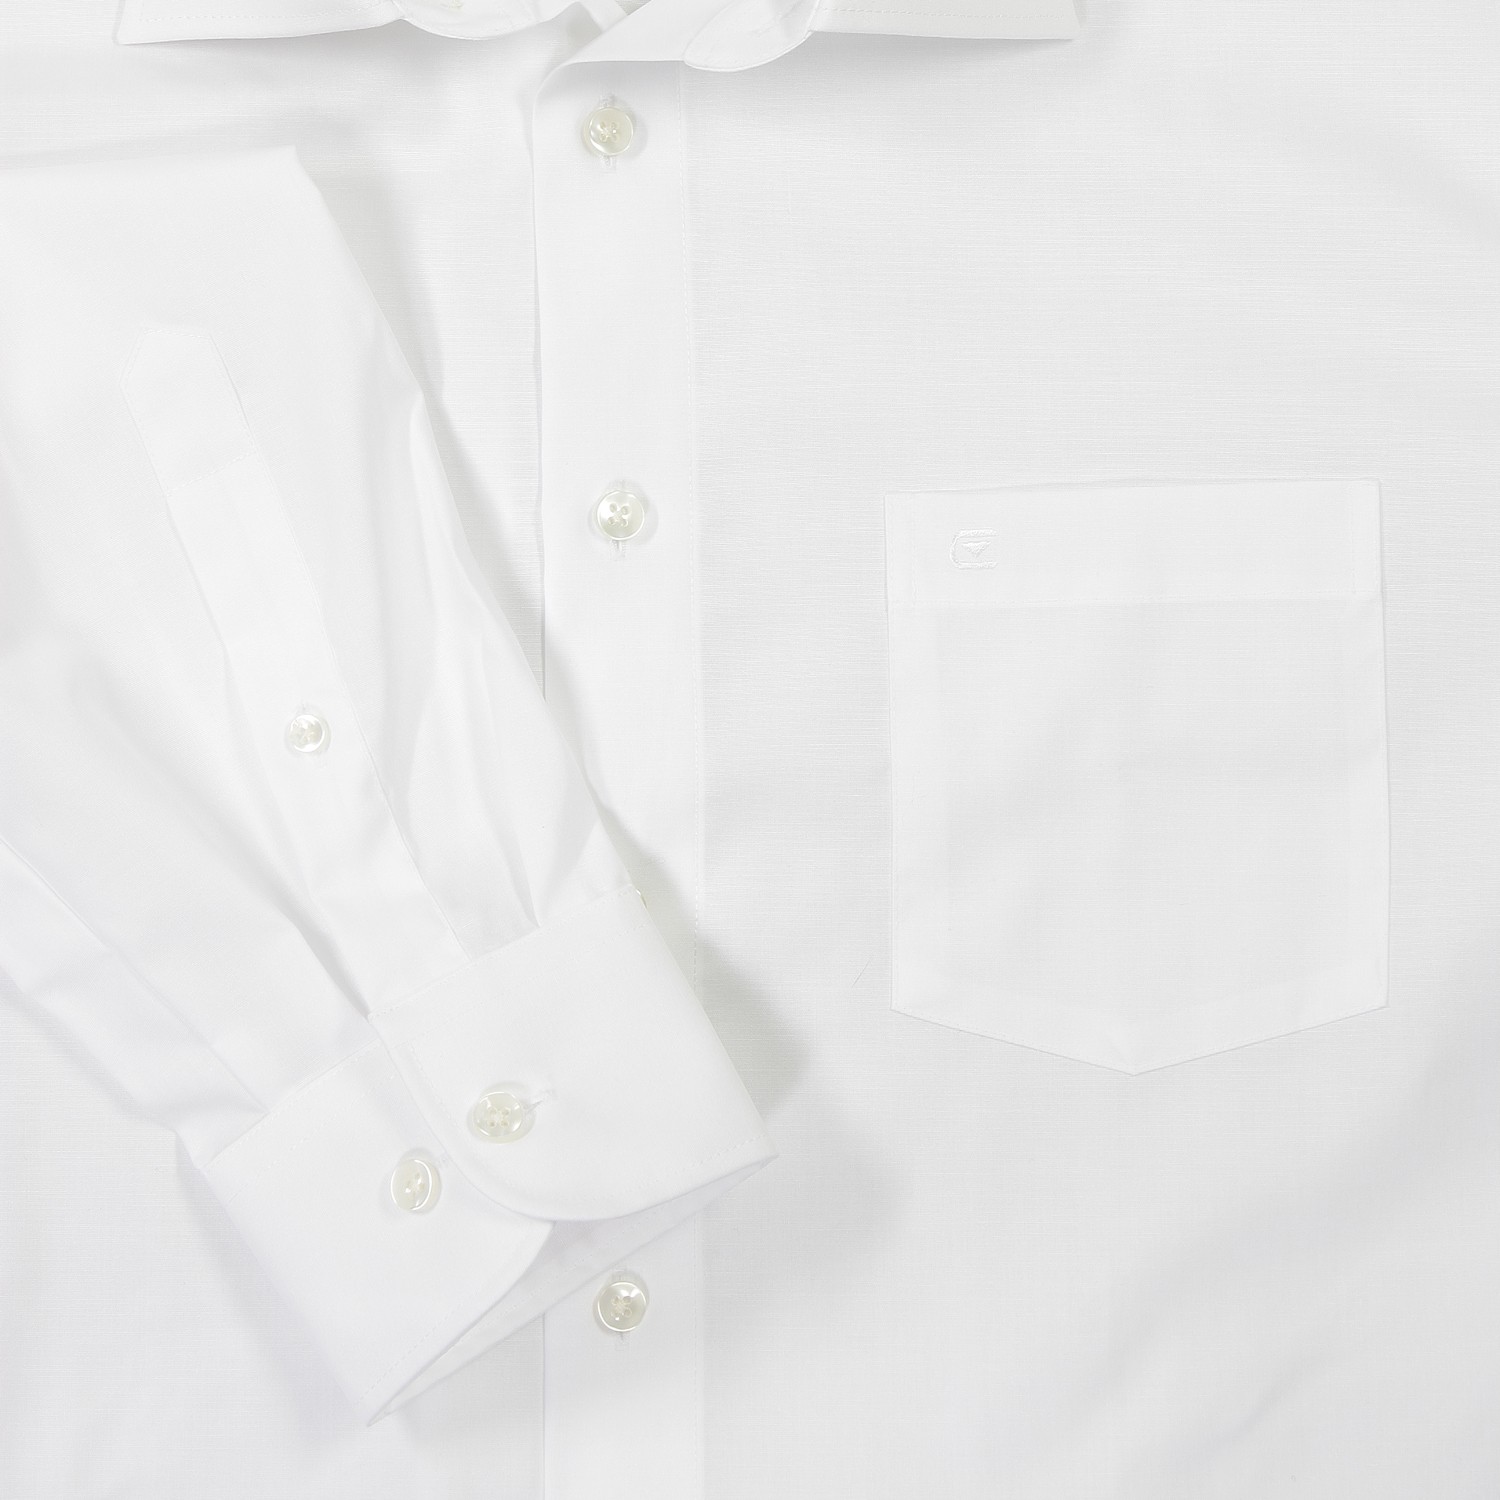 Weißes Hemd von Casa Moda in großen Größen bis 7XL